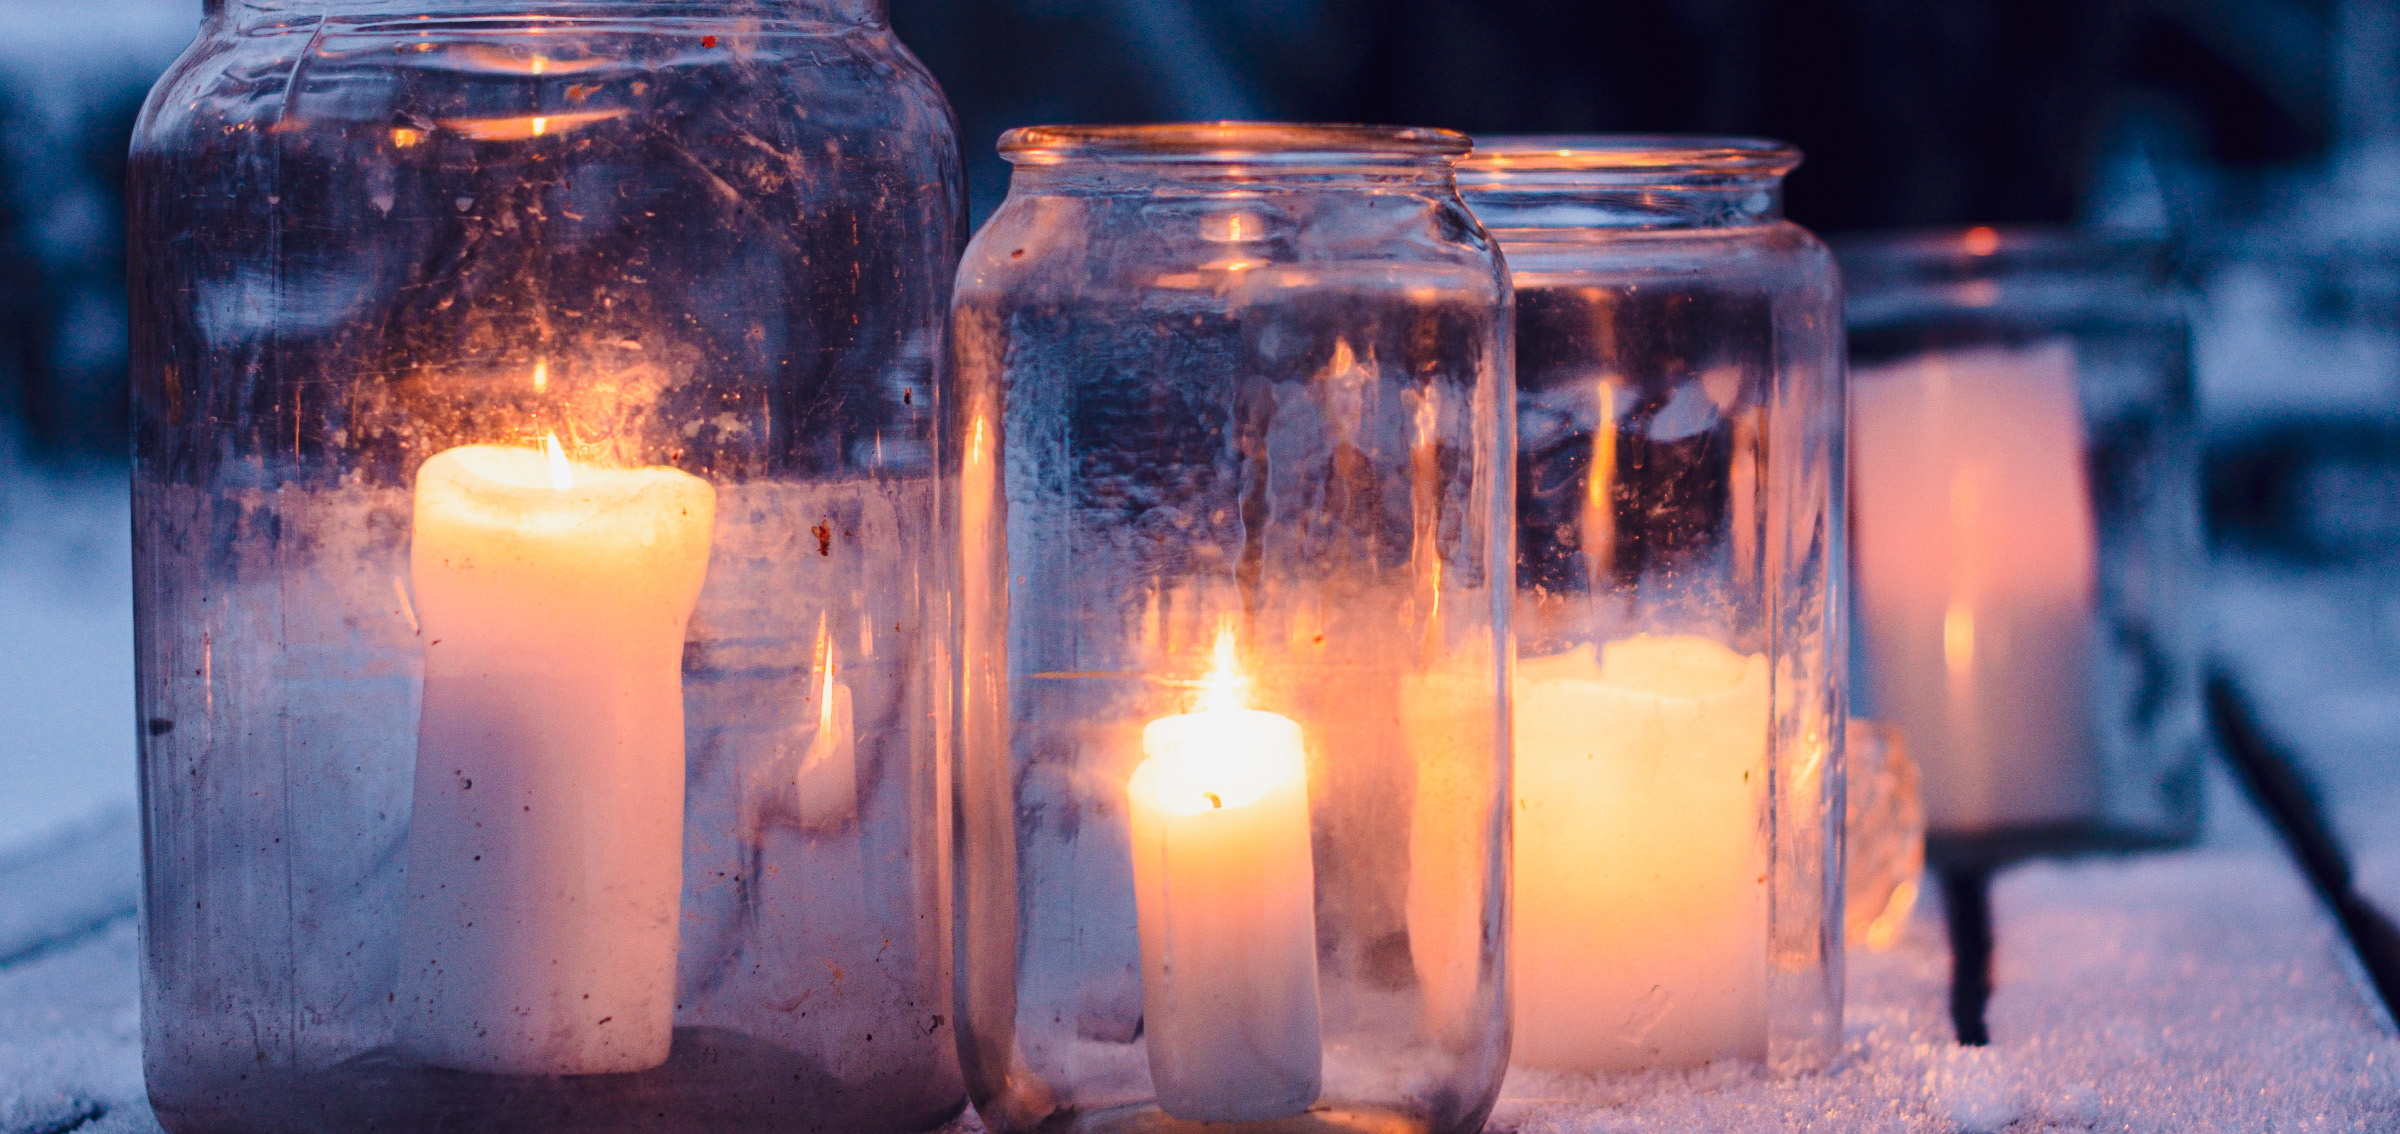 Glasbrukar med brinnande ljus på ett snötäckt trädgårdsbord.